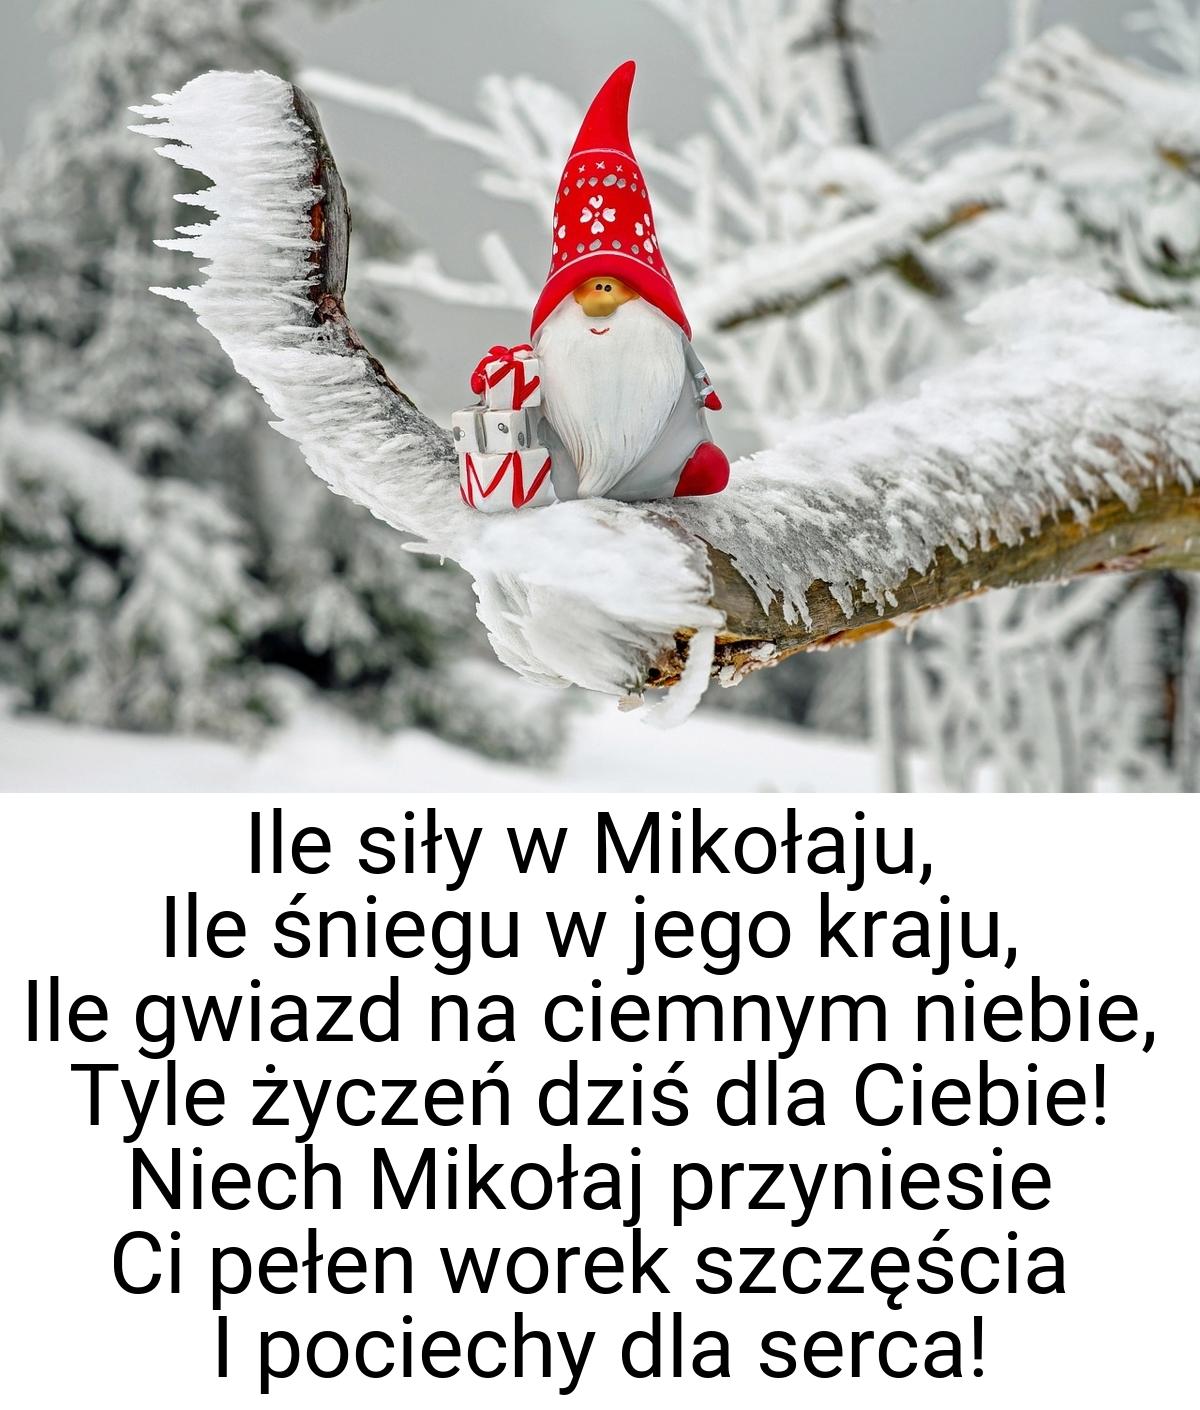 Ile siły w Mikołaju, Ile śniegu w jego kraju, Ile gwiazd na